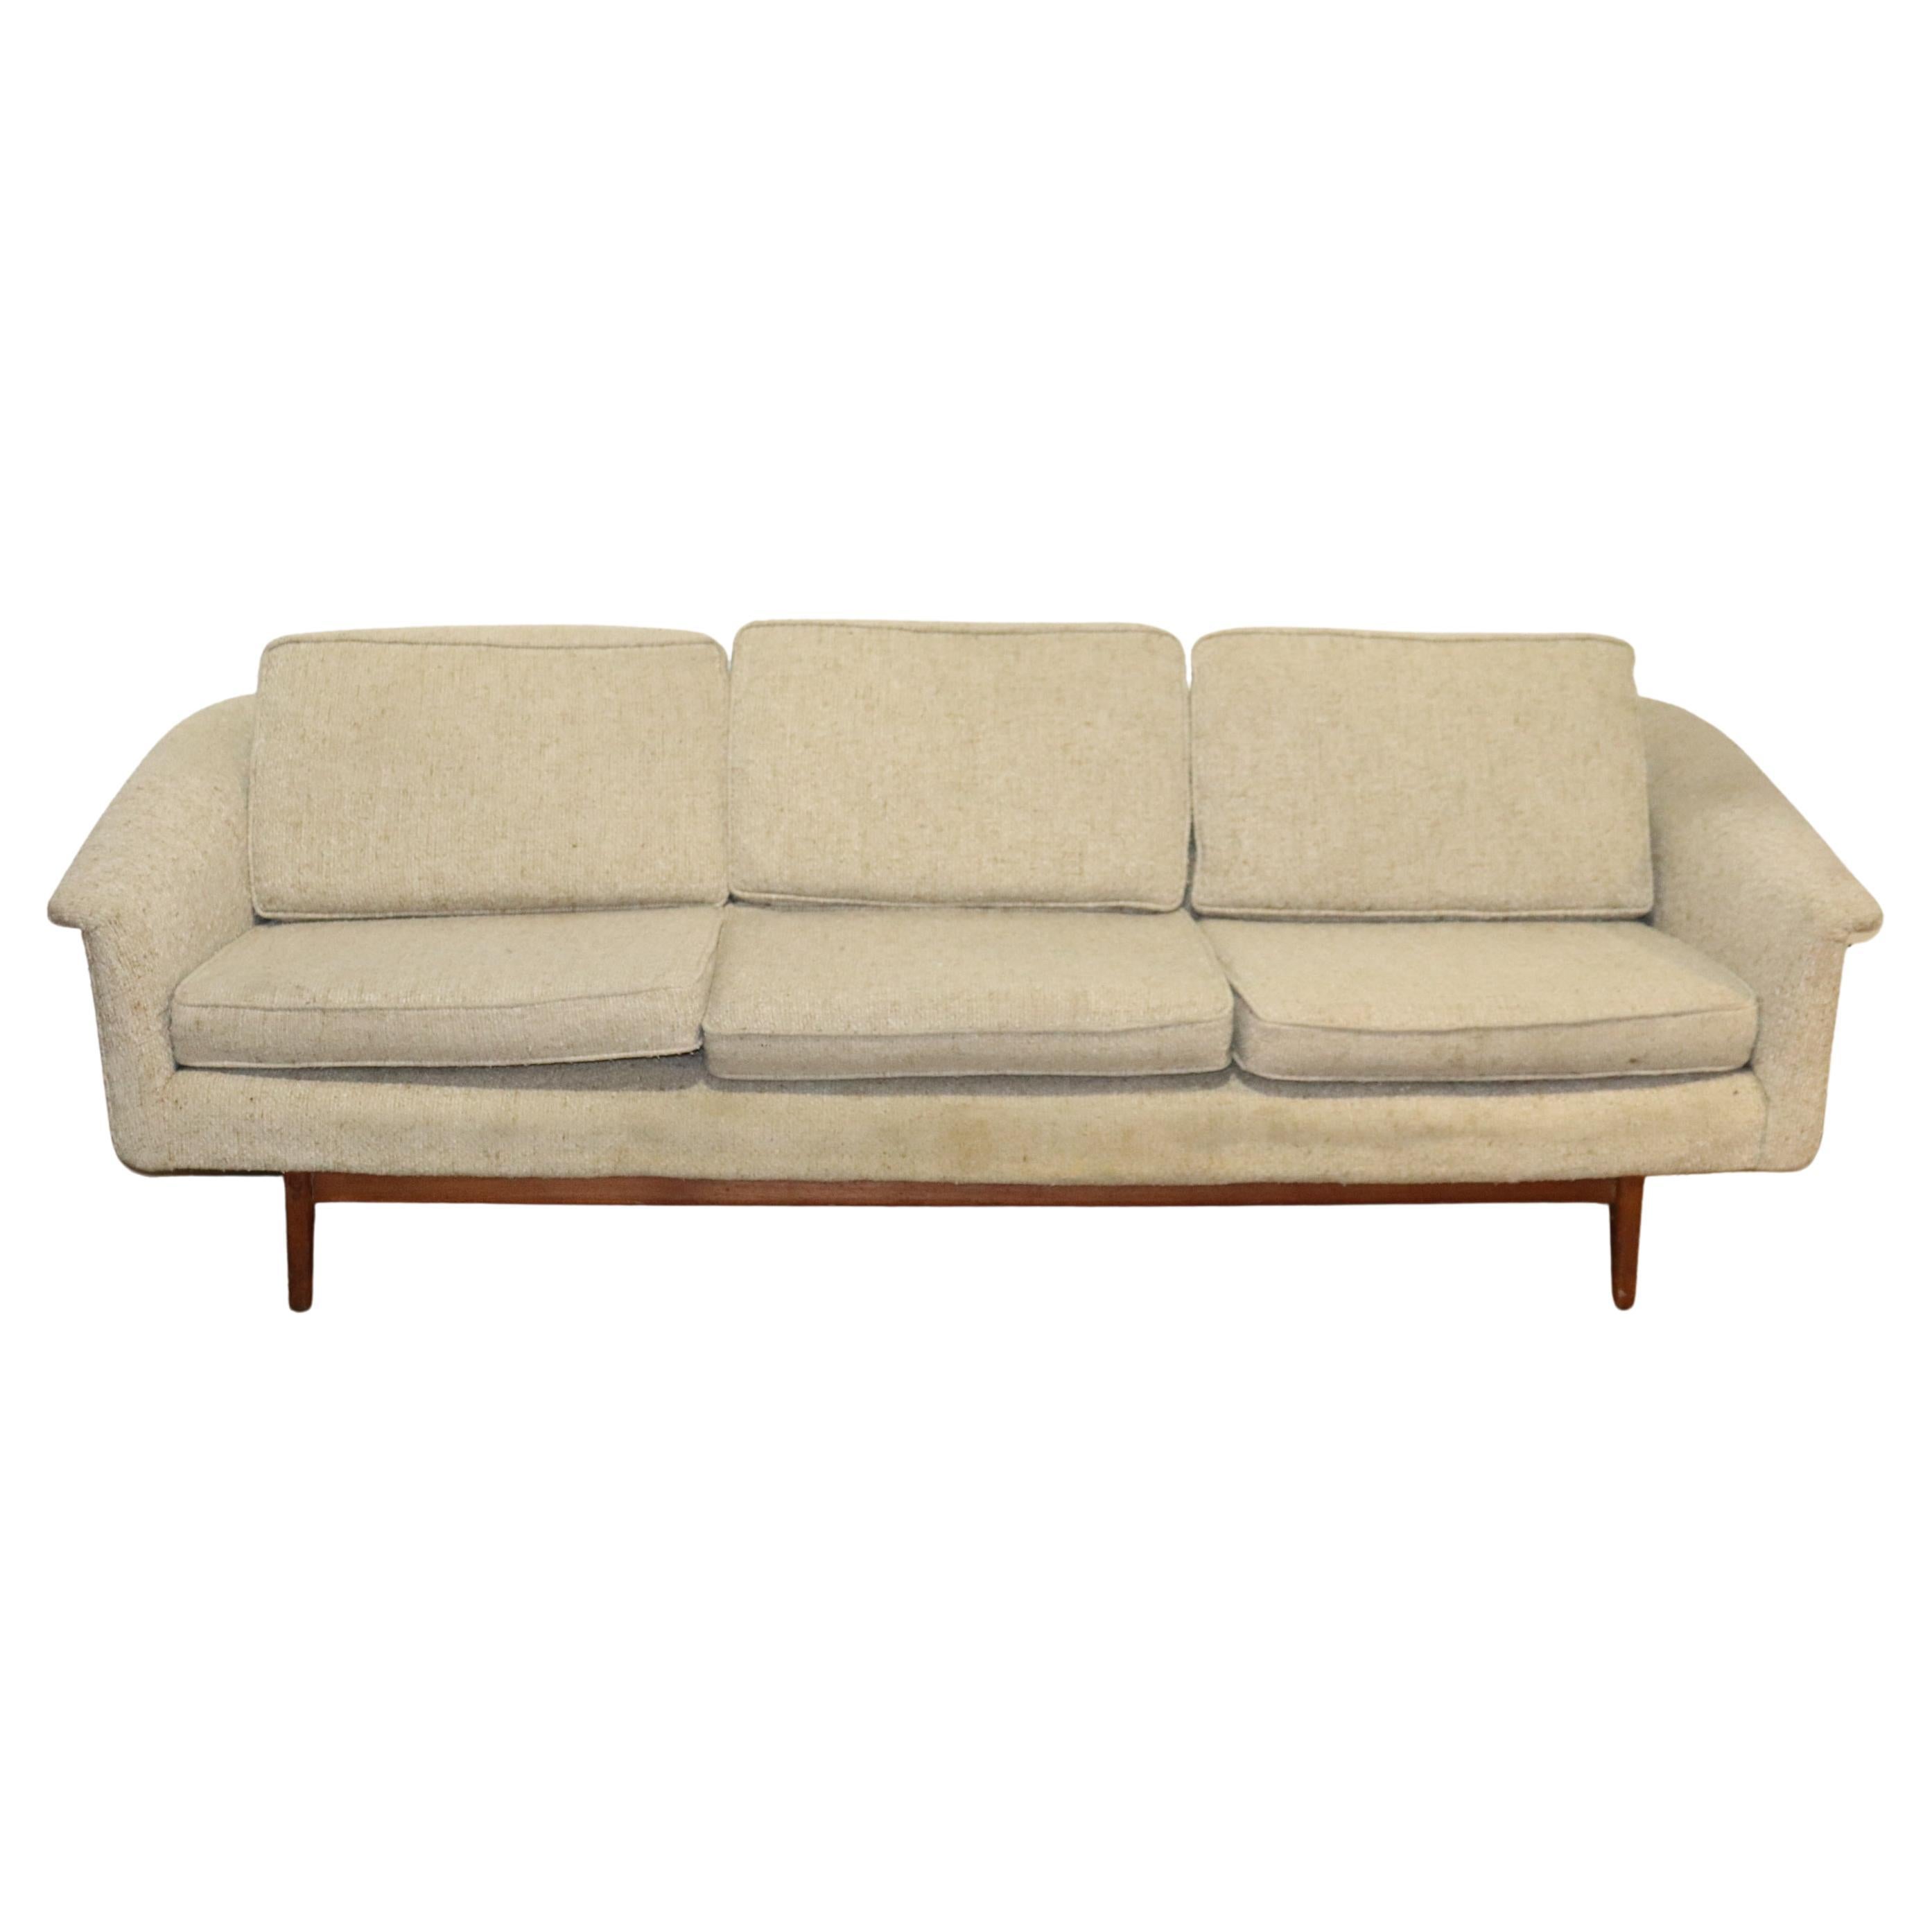 Folke Ohlsson Designed Sofa for Dux